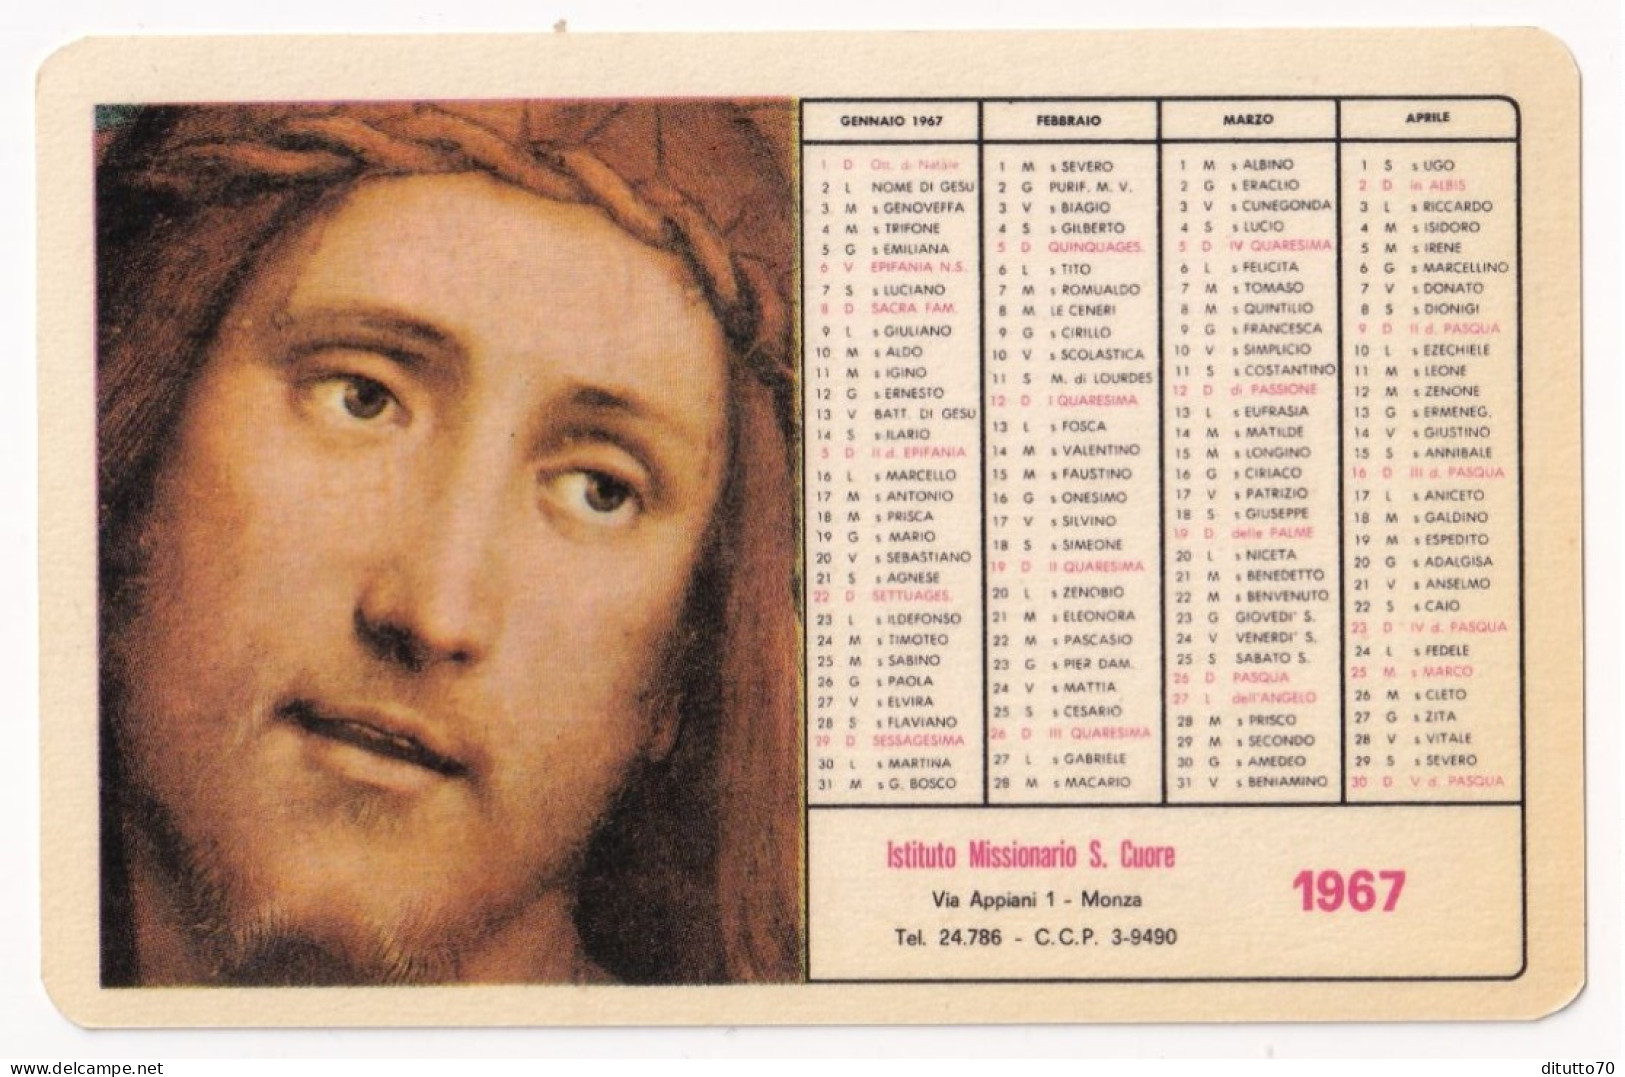 Calendarietto - Istituto Missionario S.cuore - Monza - Anno 1967 - Small : 1961-70